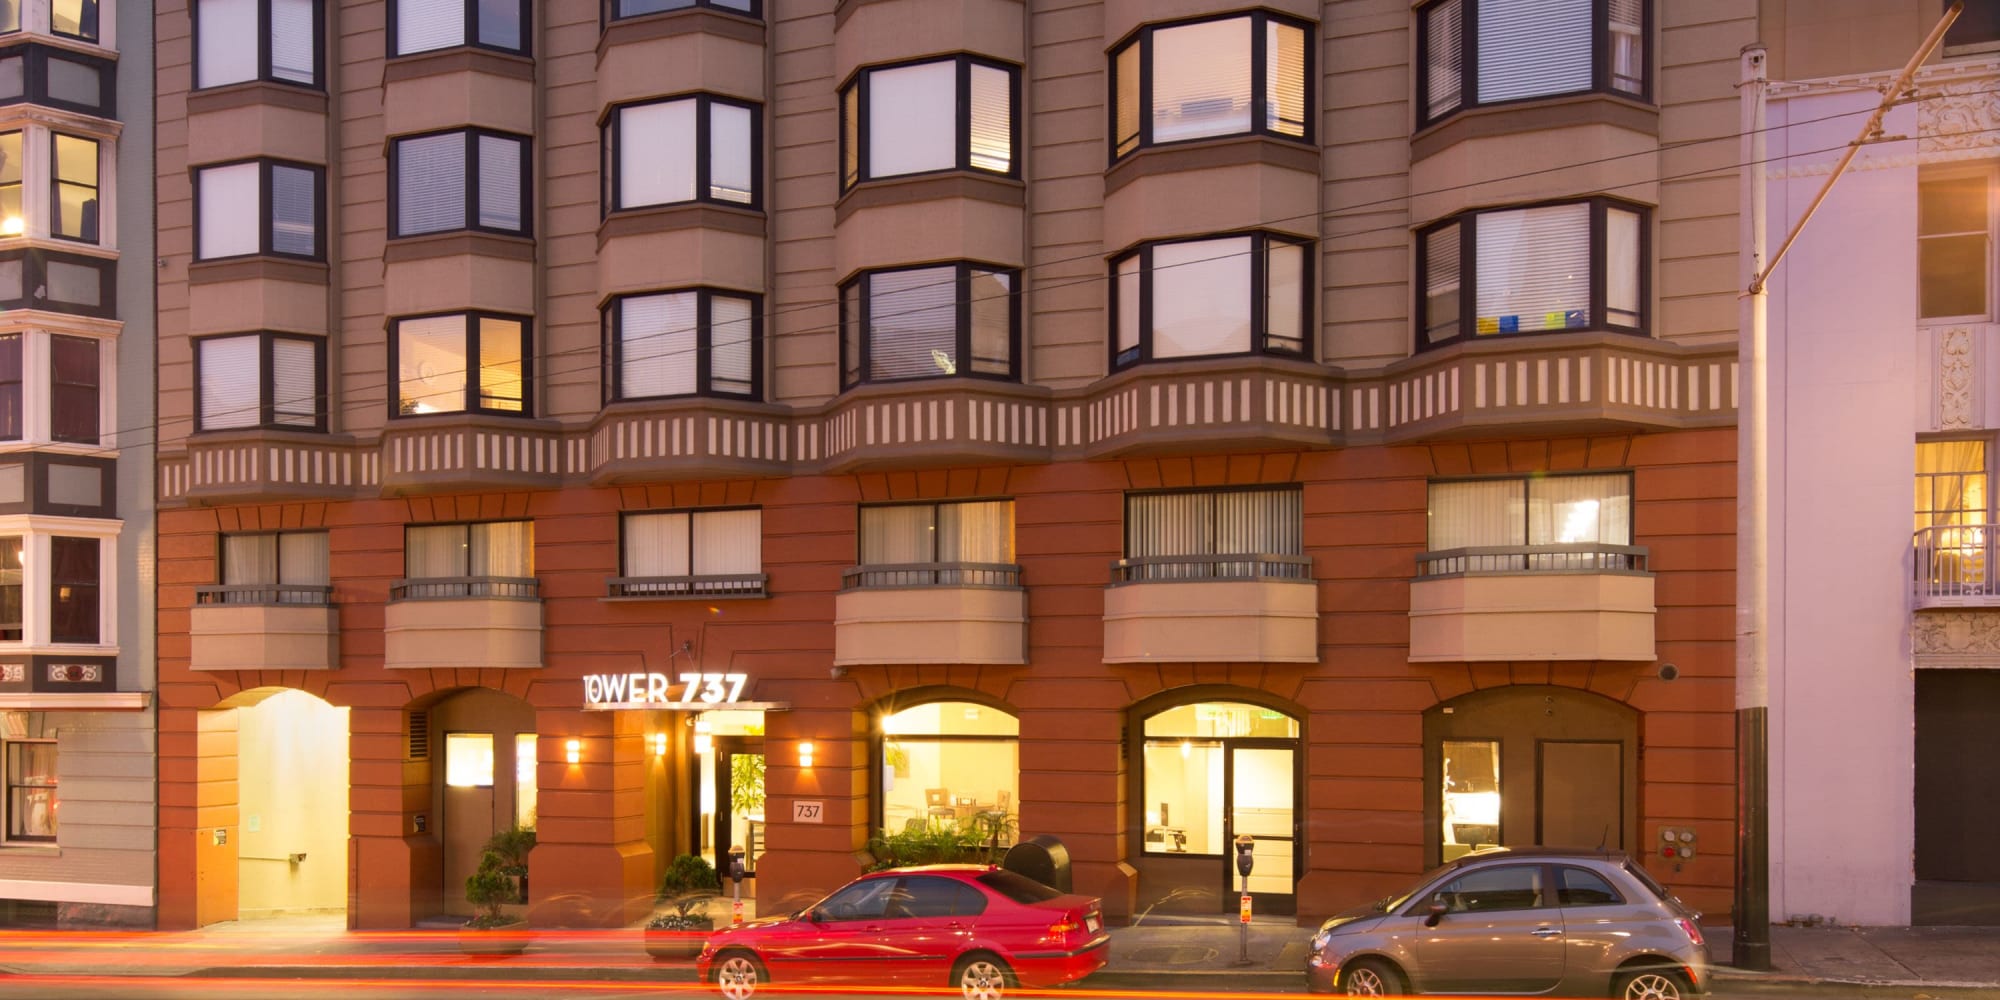 Tower 737 Condominium Rentals apartments in San Francisco, California